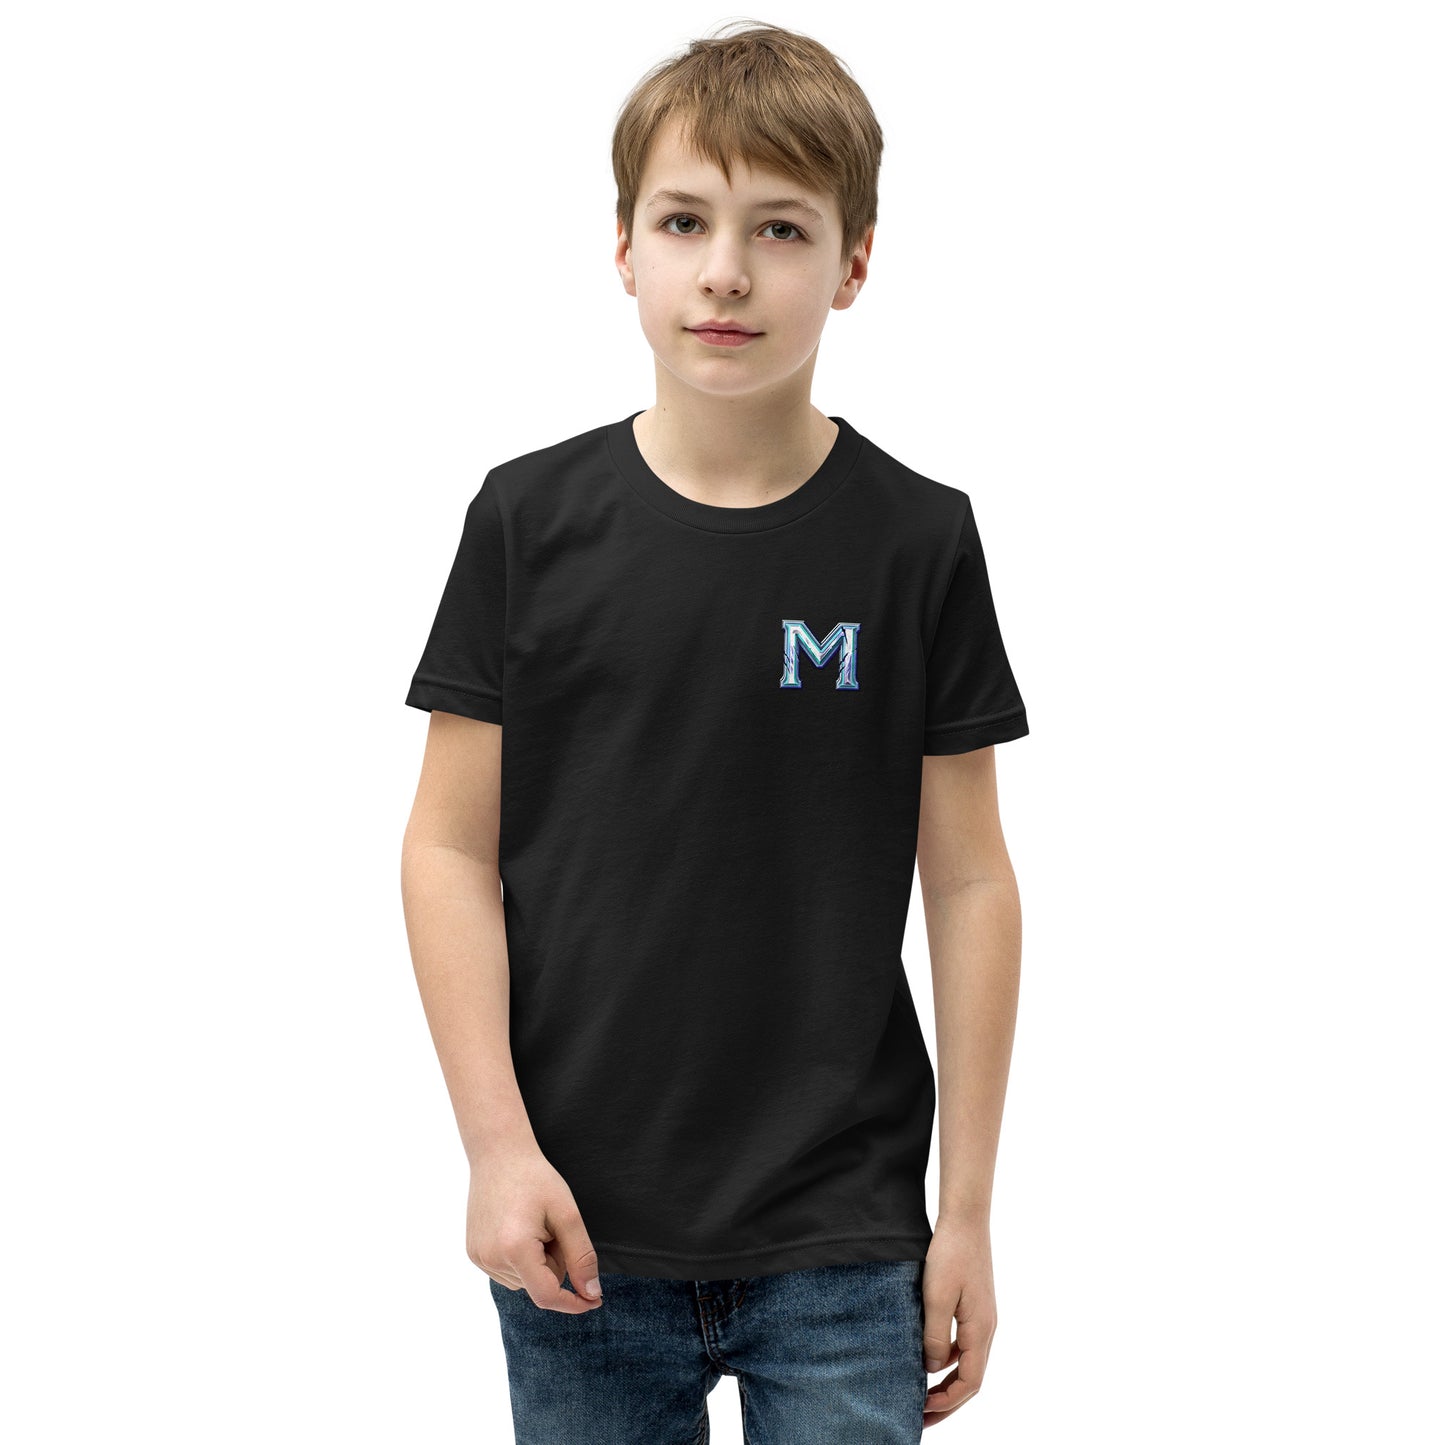 Medivia M Kid's T-Shirt